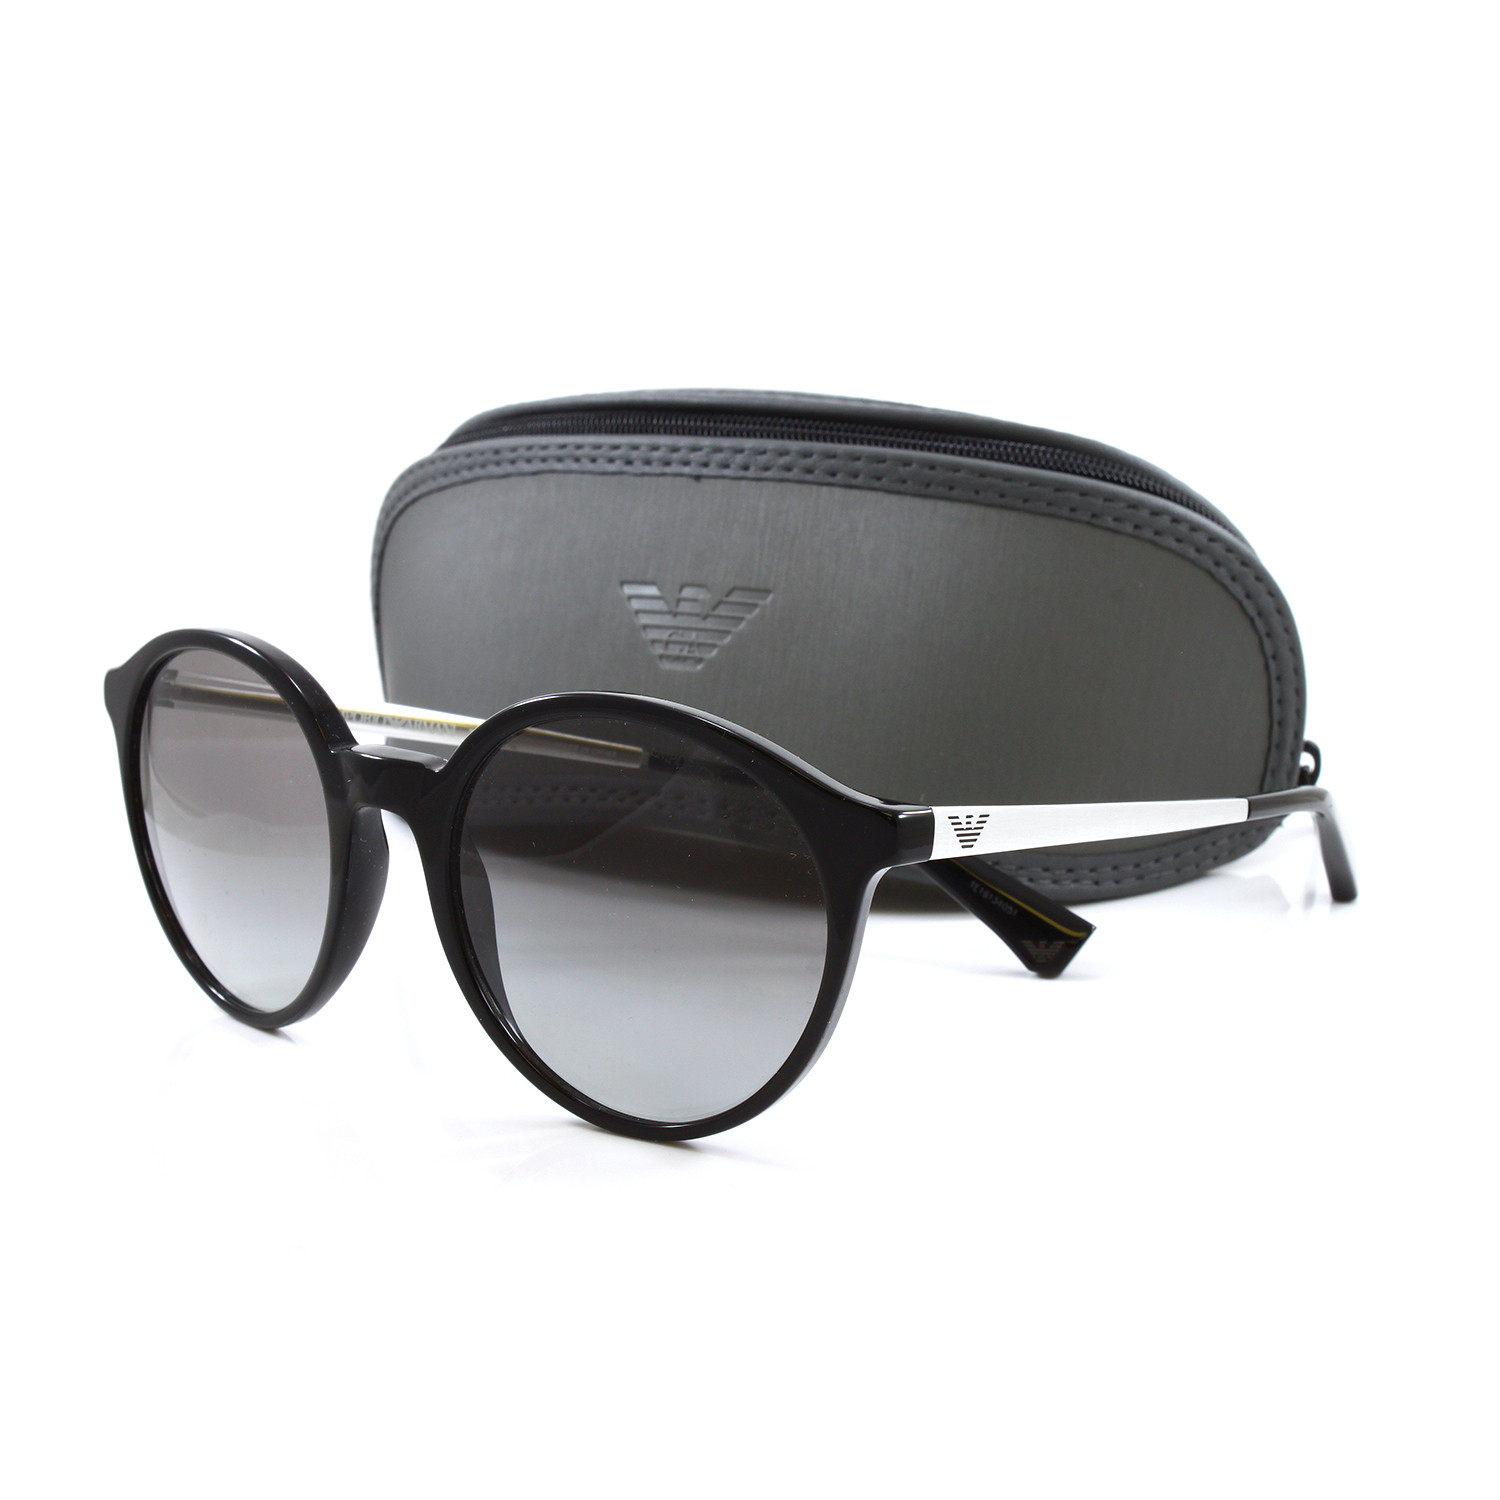 Emporio Armani // Women's EA4134 Sunglasses // Black - Emporio Armani ...